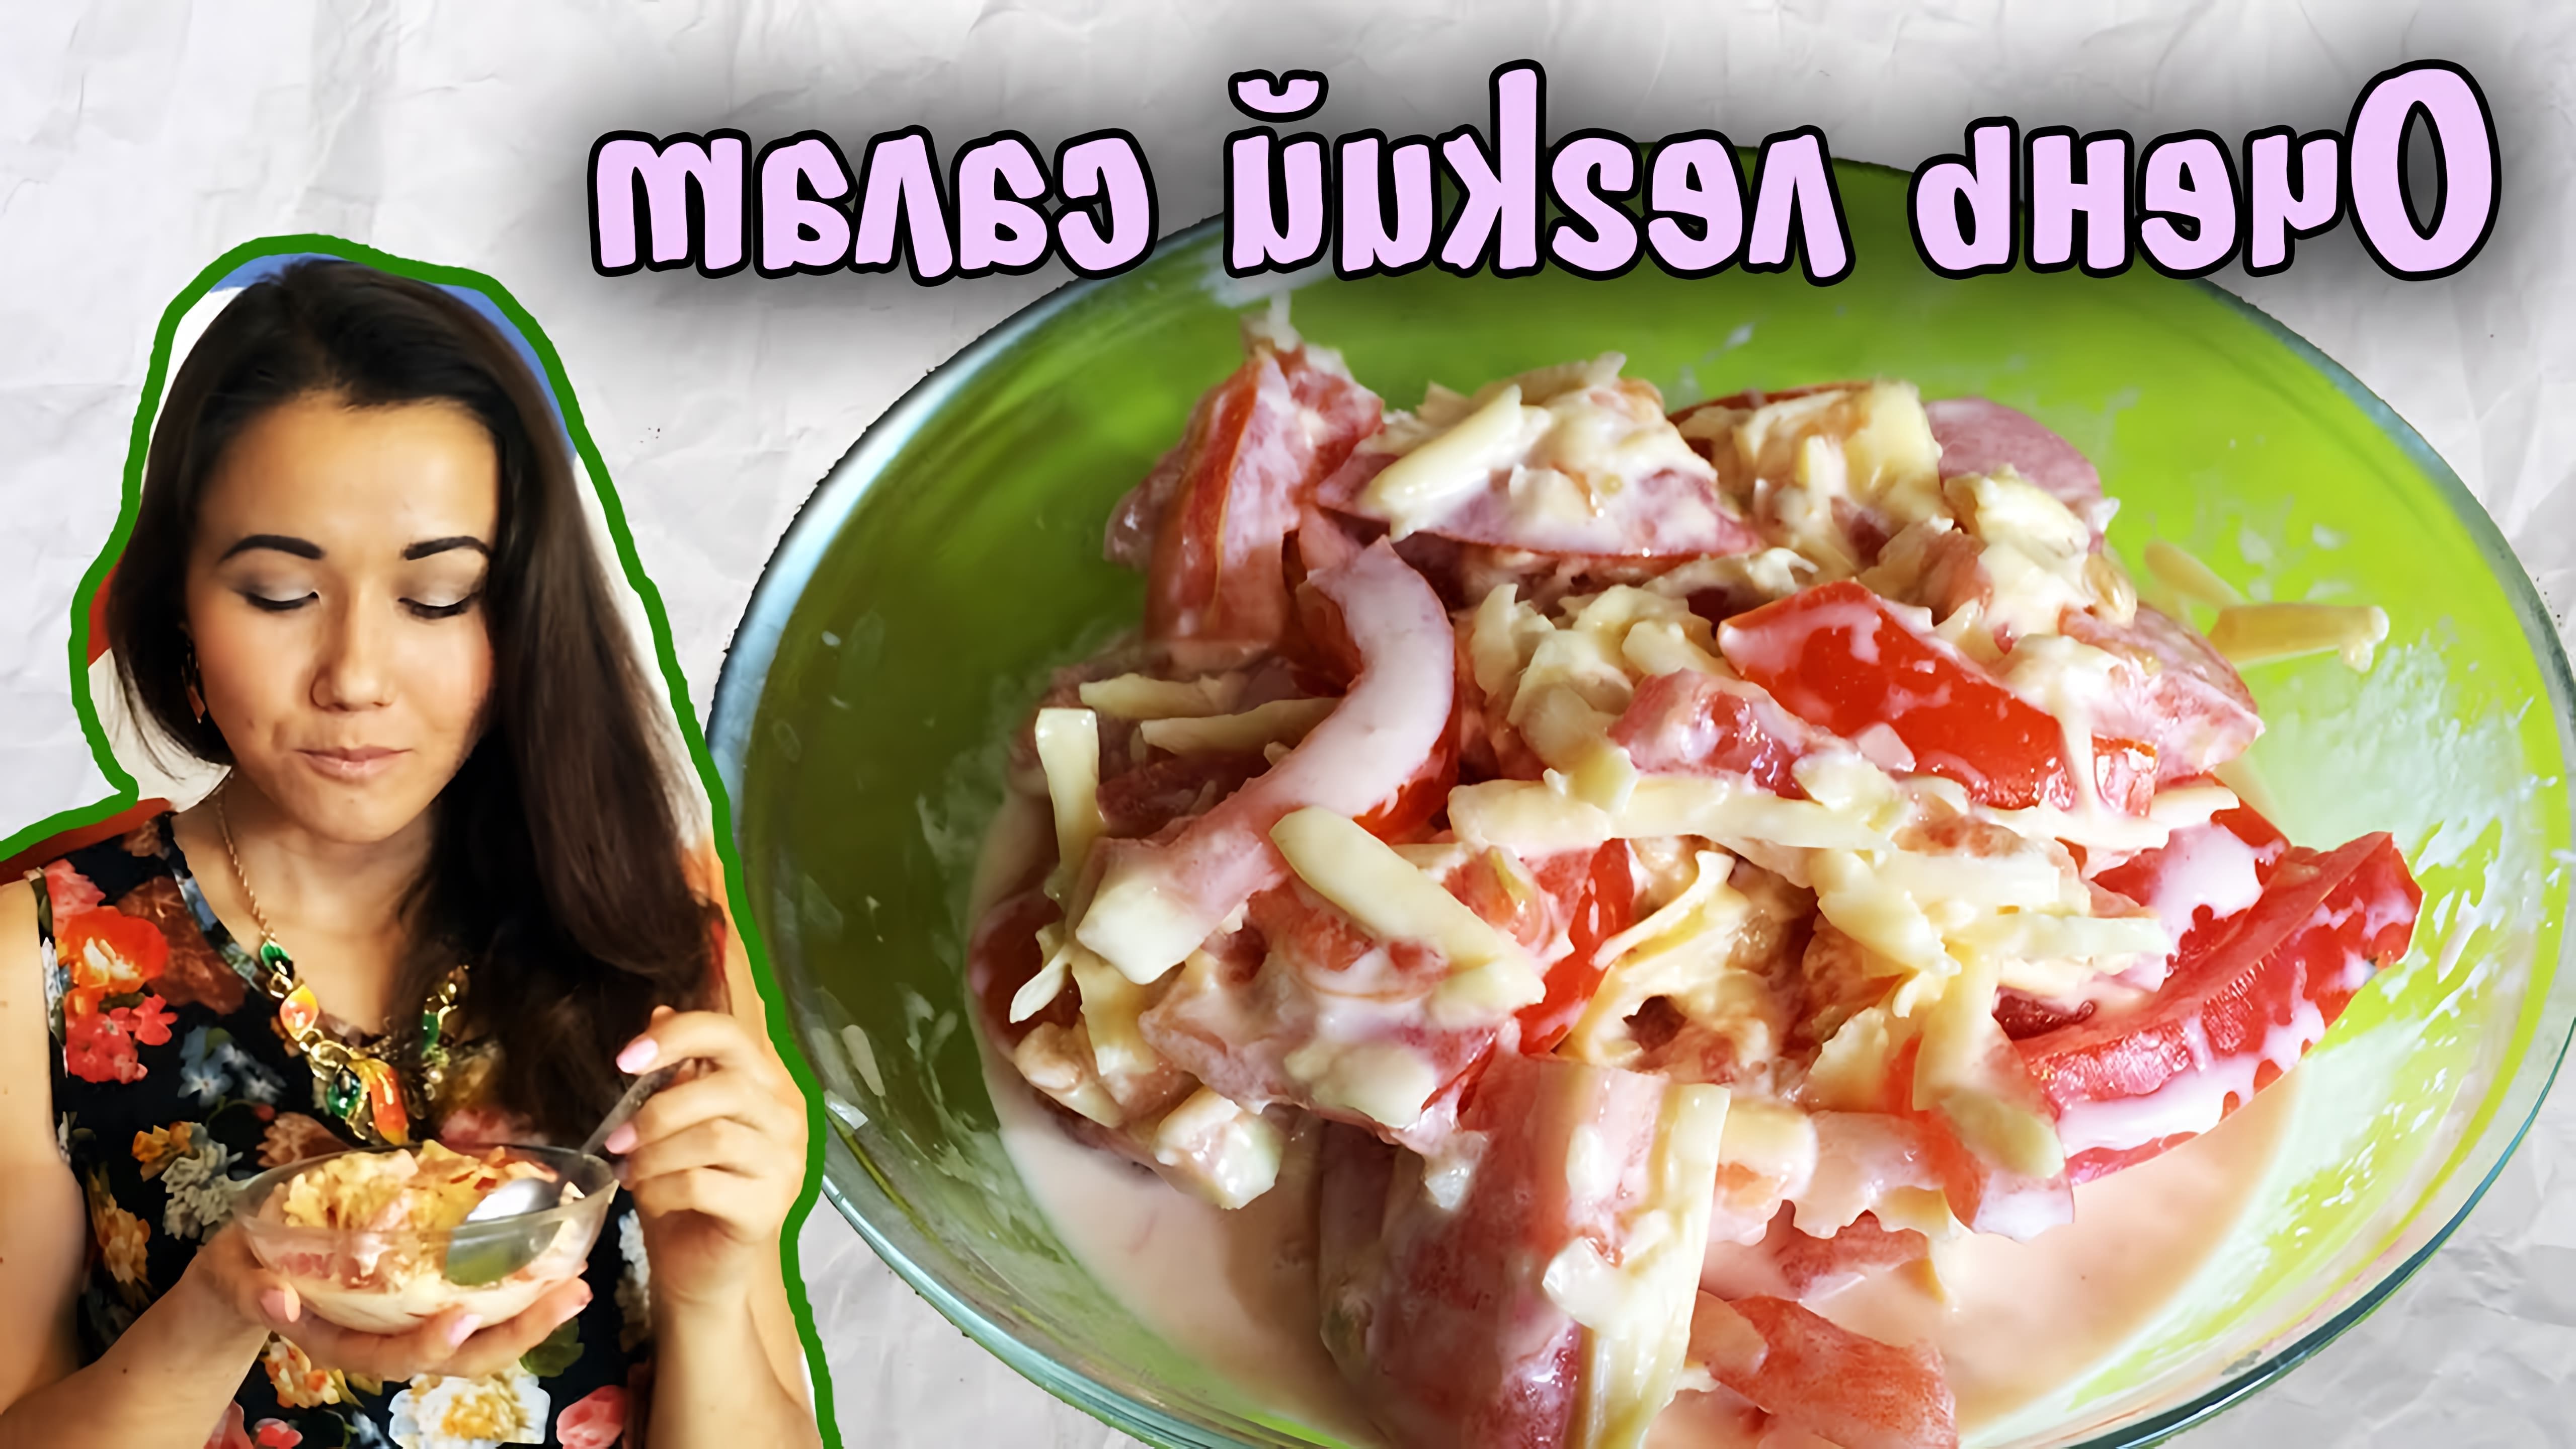 Салат с помидорами и сыром - вкусный рецепт на Раз-Два!

В этом видео-ролике вы увидите, как приготовить вкусный салат с помидорами и сыром